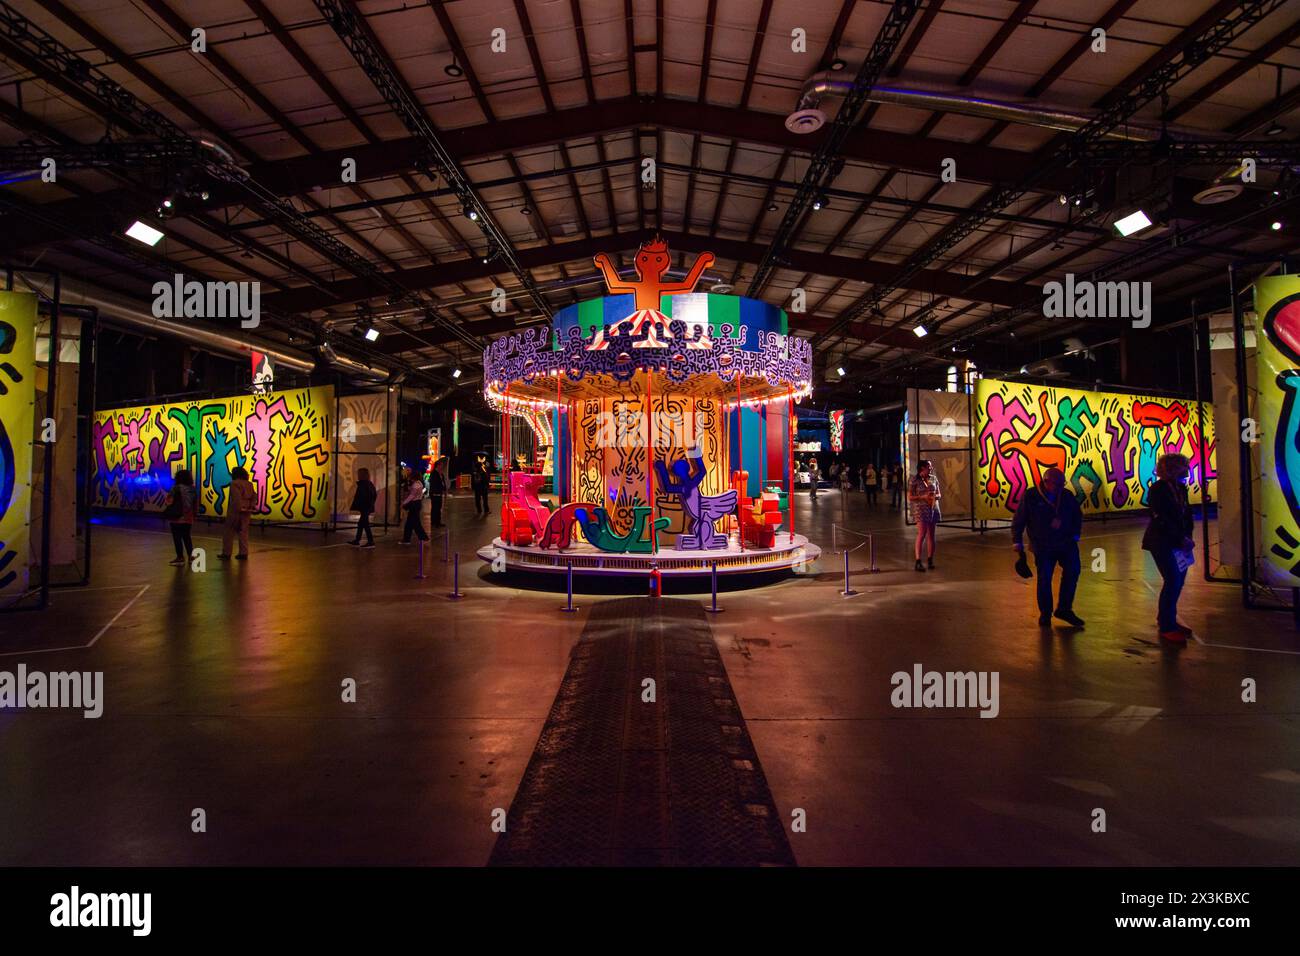 Industriell gefertigte Planen und ein bemaltes Karussell von Keith Haring sind im Luna Luna Art Amusement Park in Los Angeles zu sehen. Stockfoto